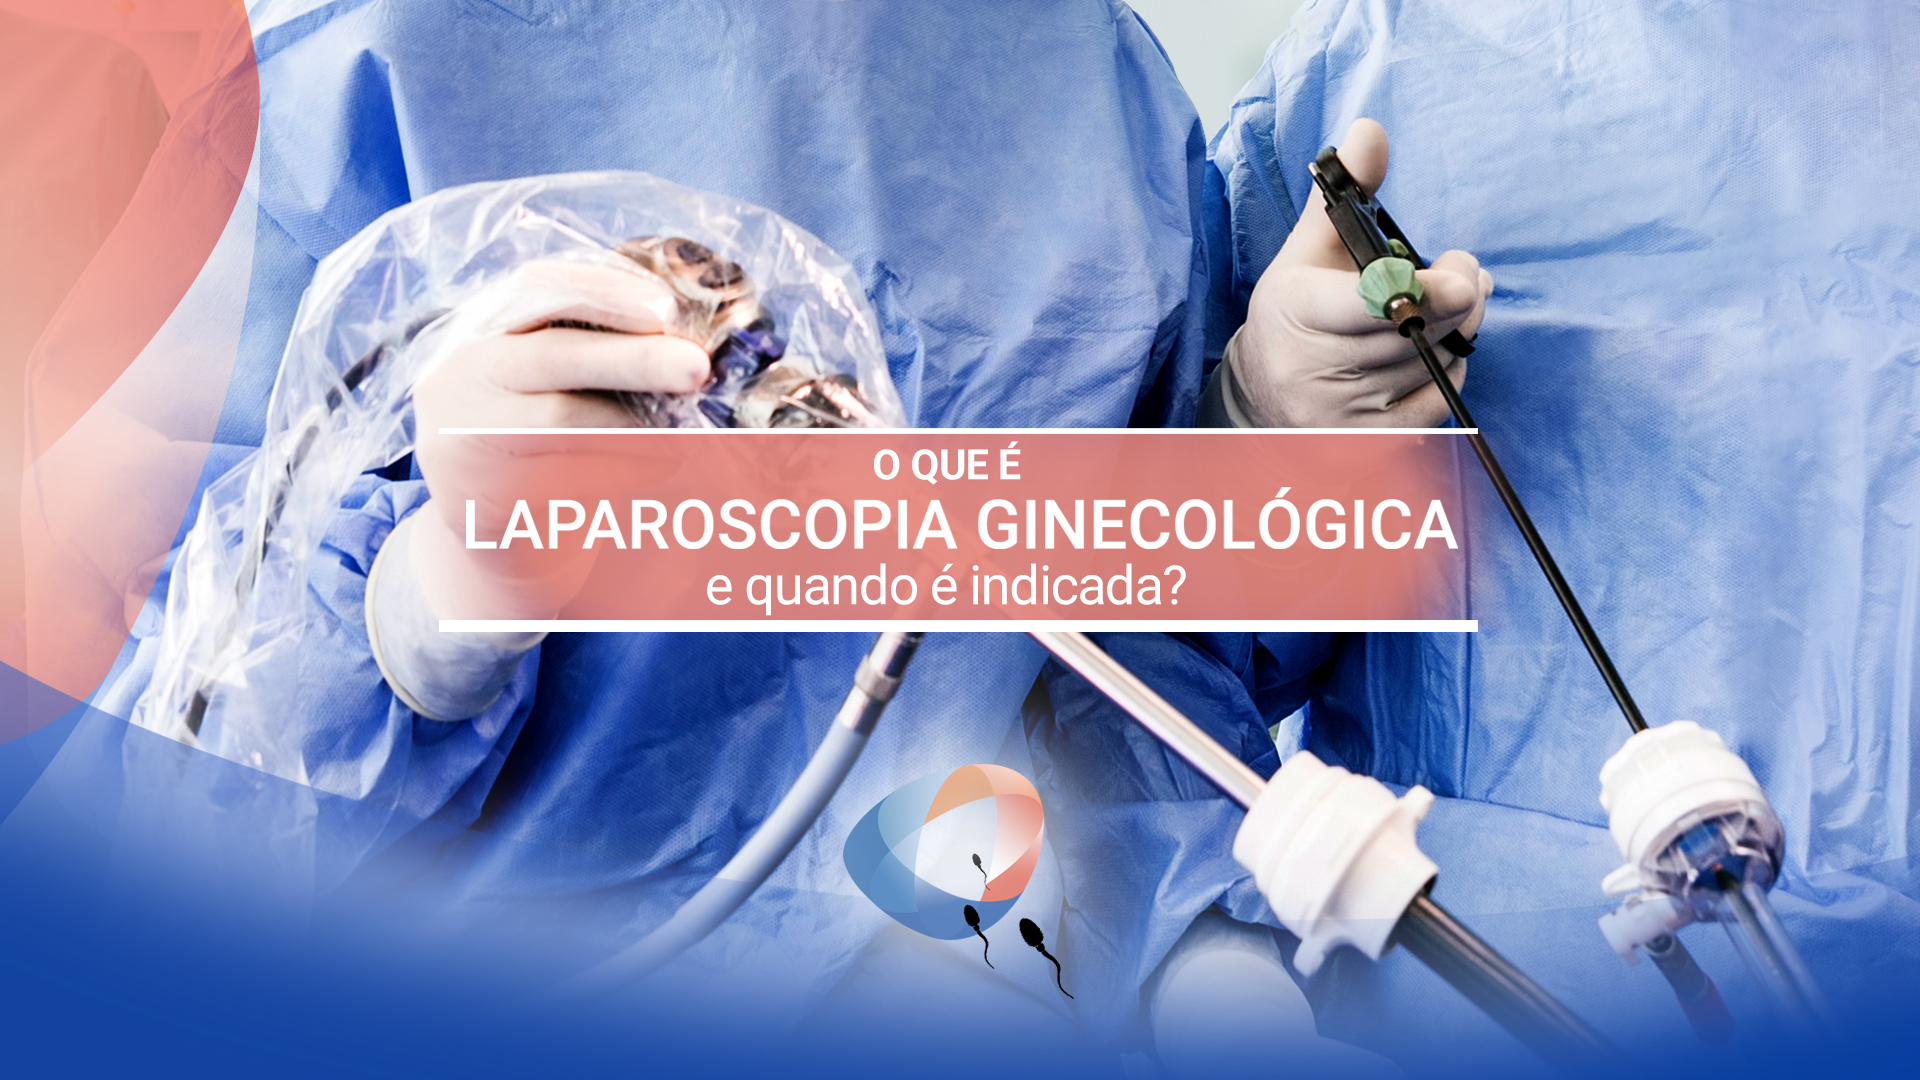 O que é laparoscopia ginecológica e quando é indicada?